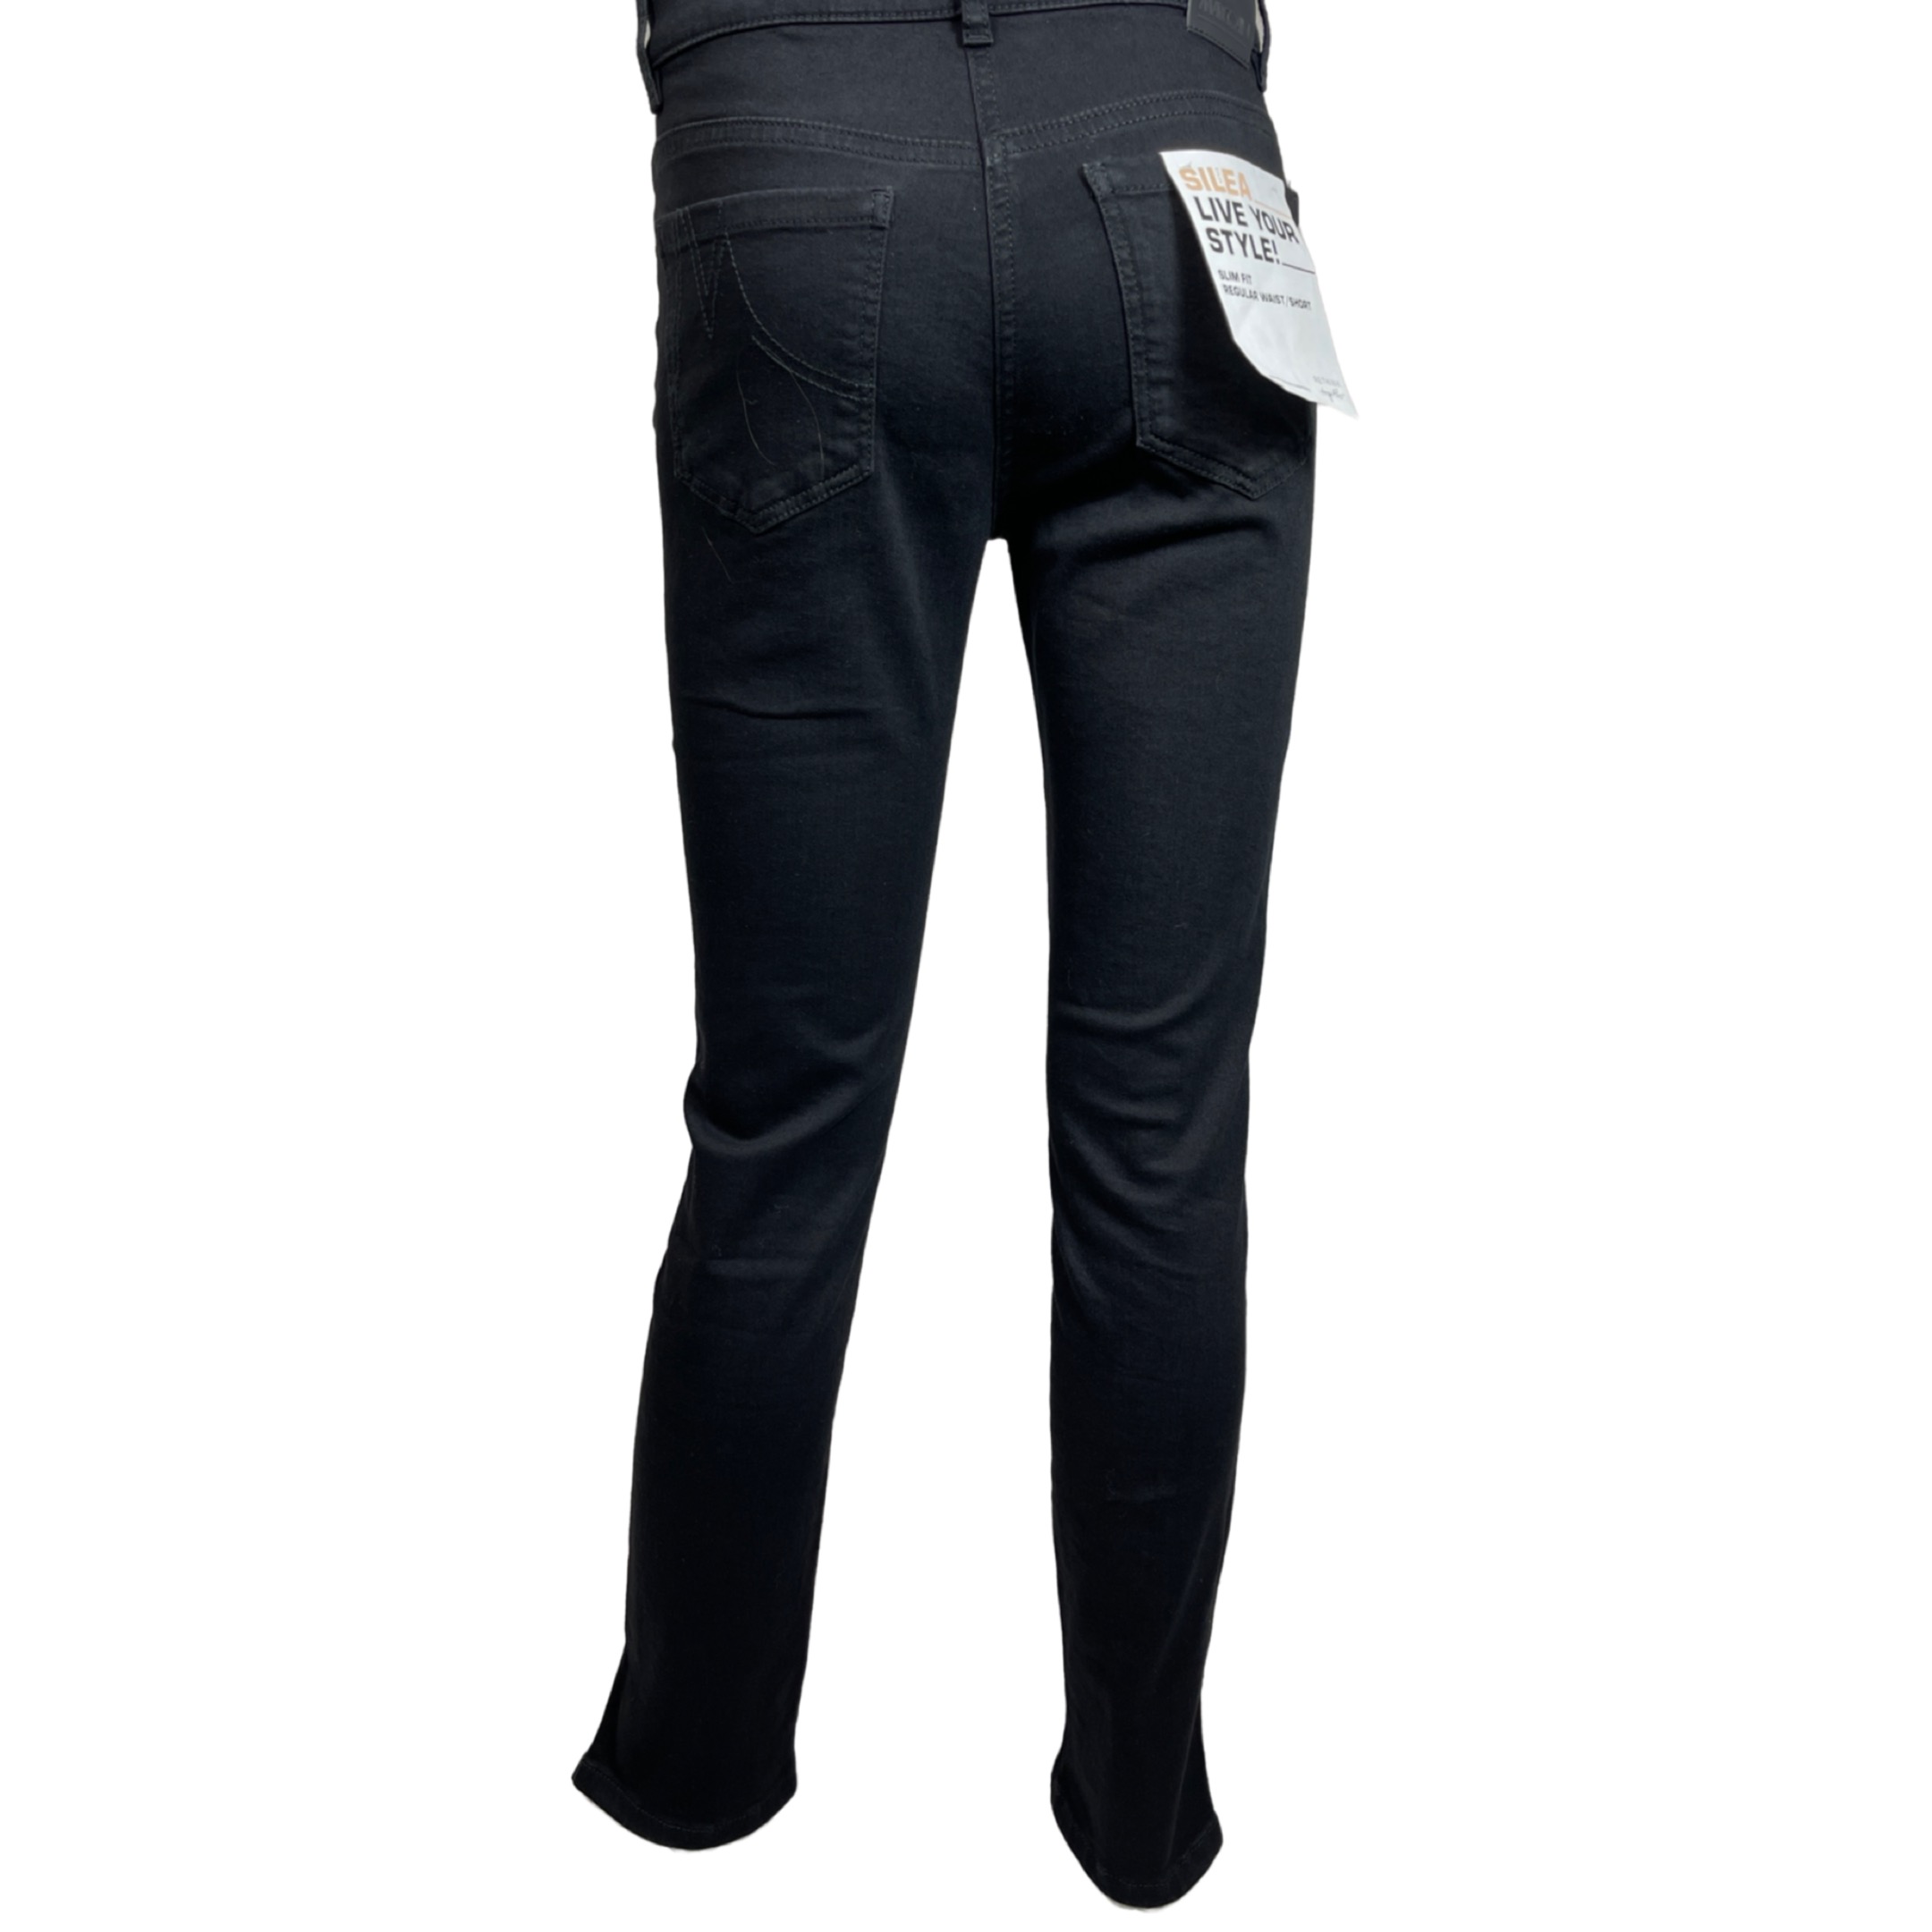 MARC CAIN UP 82.02 D70 Damen Jeans Rethink Together SILEA Slim Fit Schwarz 900